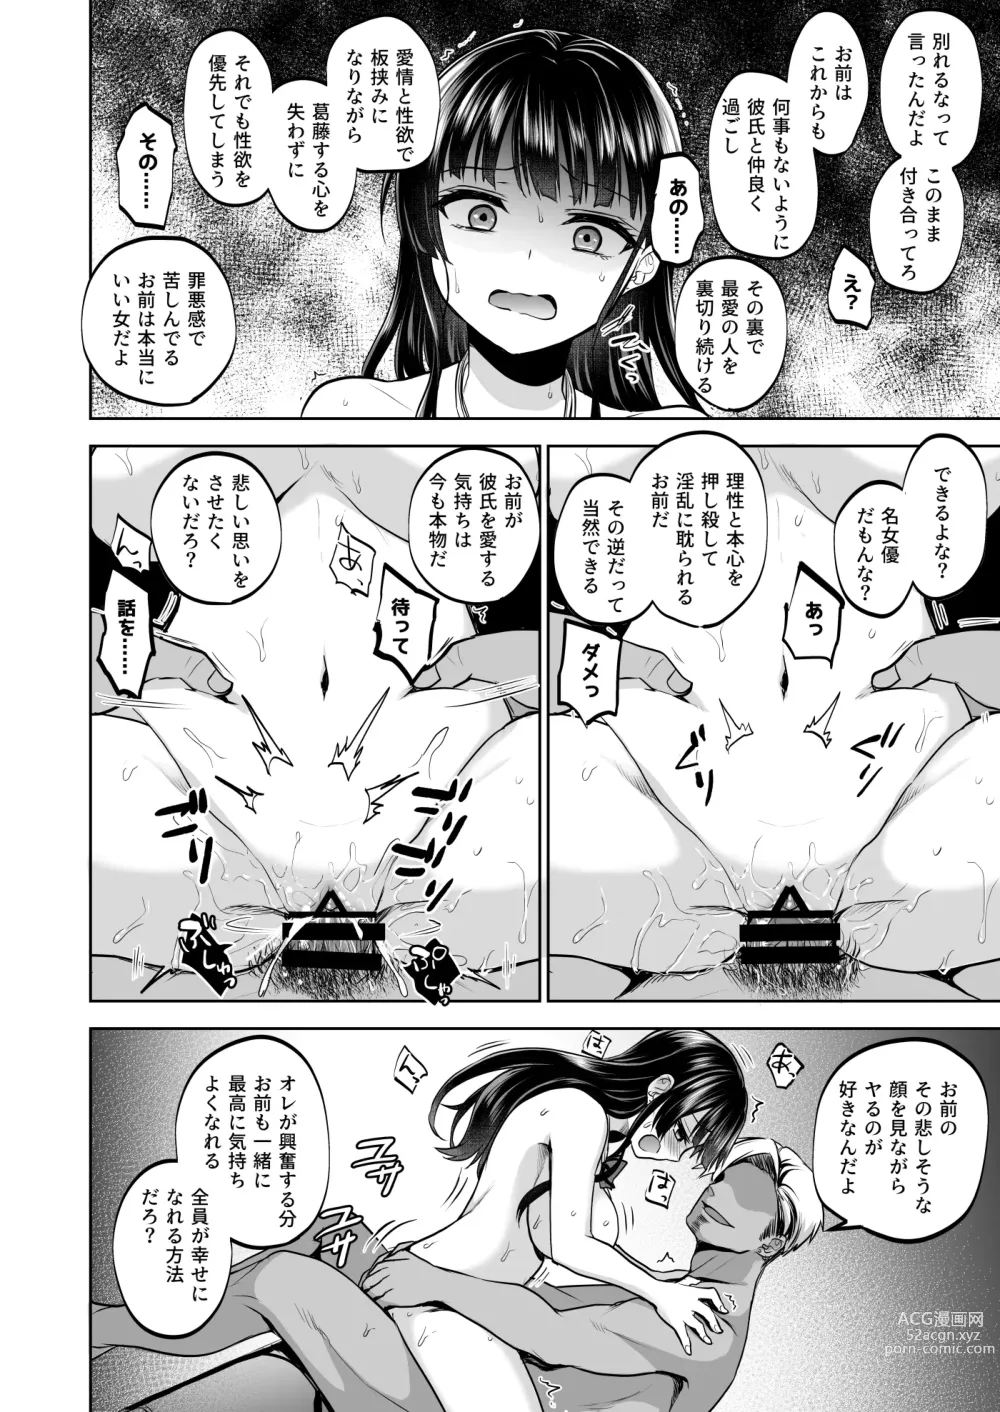 Page 75 of doujinshi Omoide wa Yogosareru 2 ~Kokoro made Somerarete~